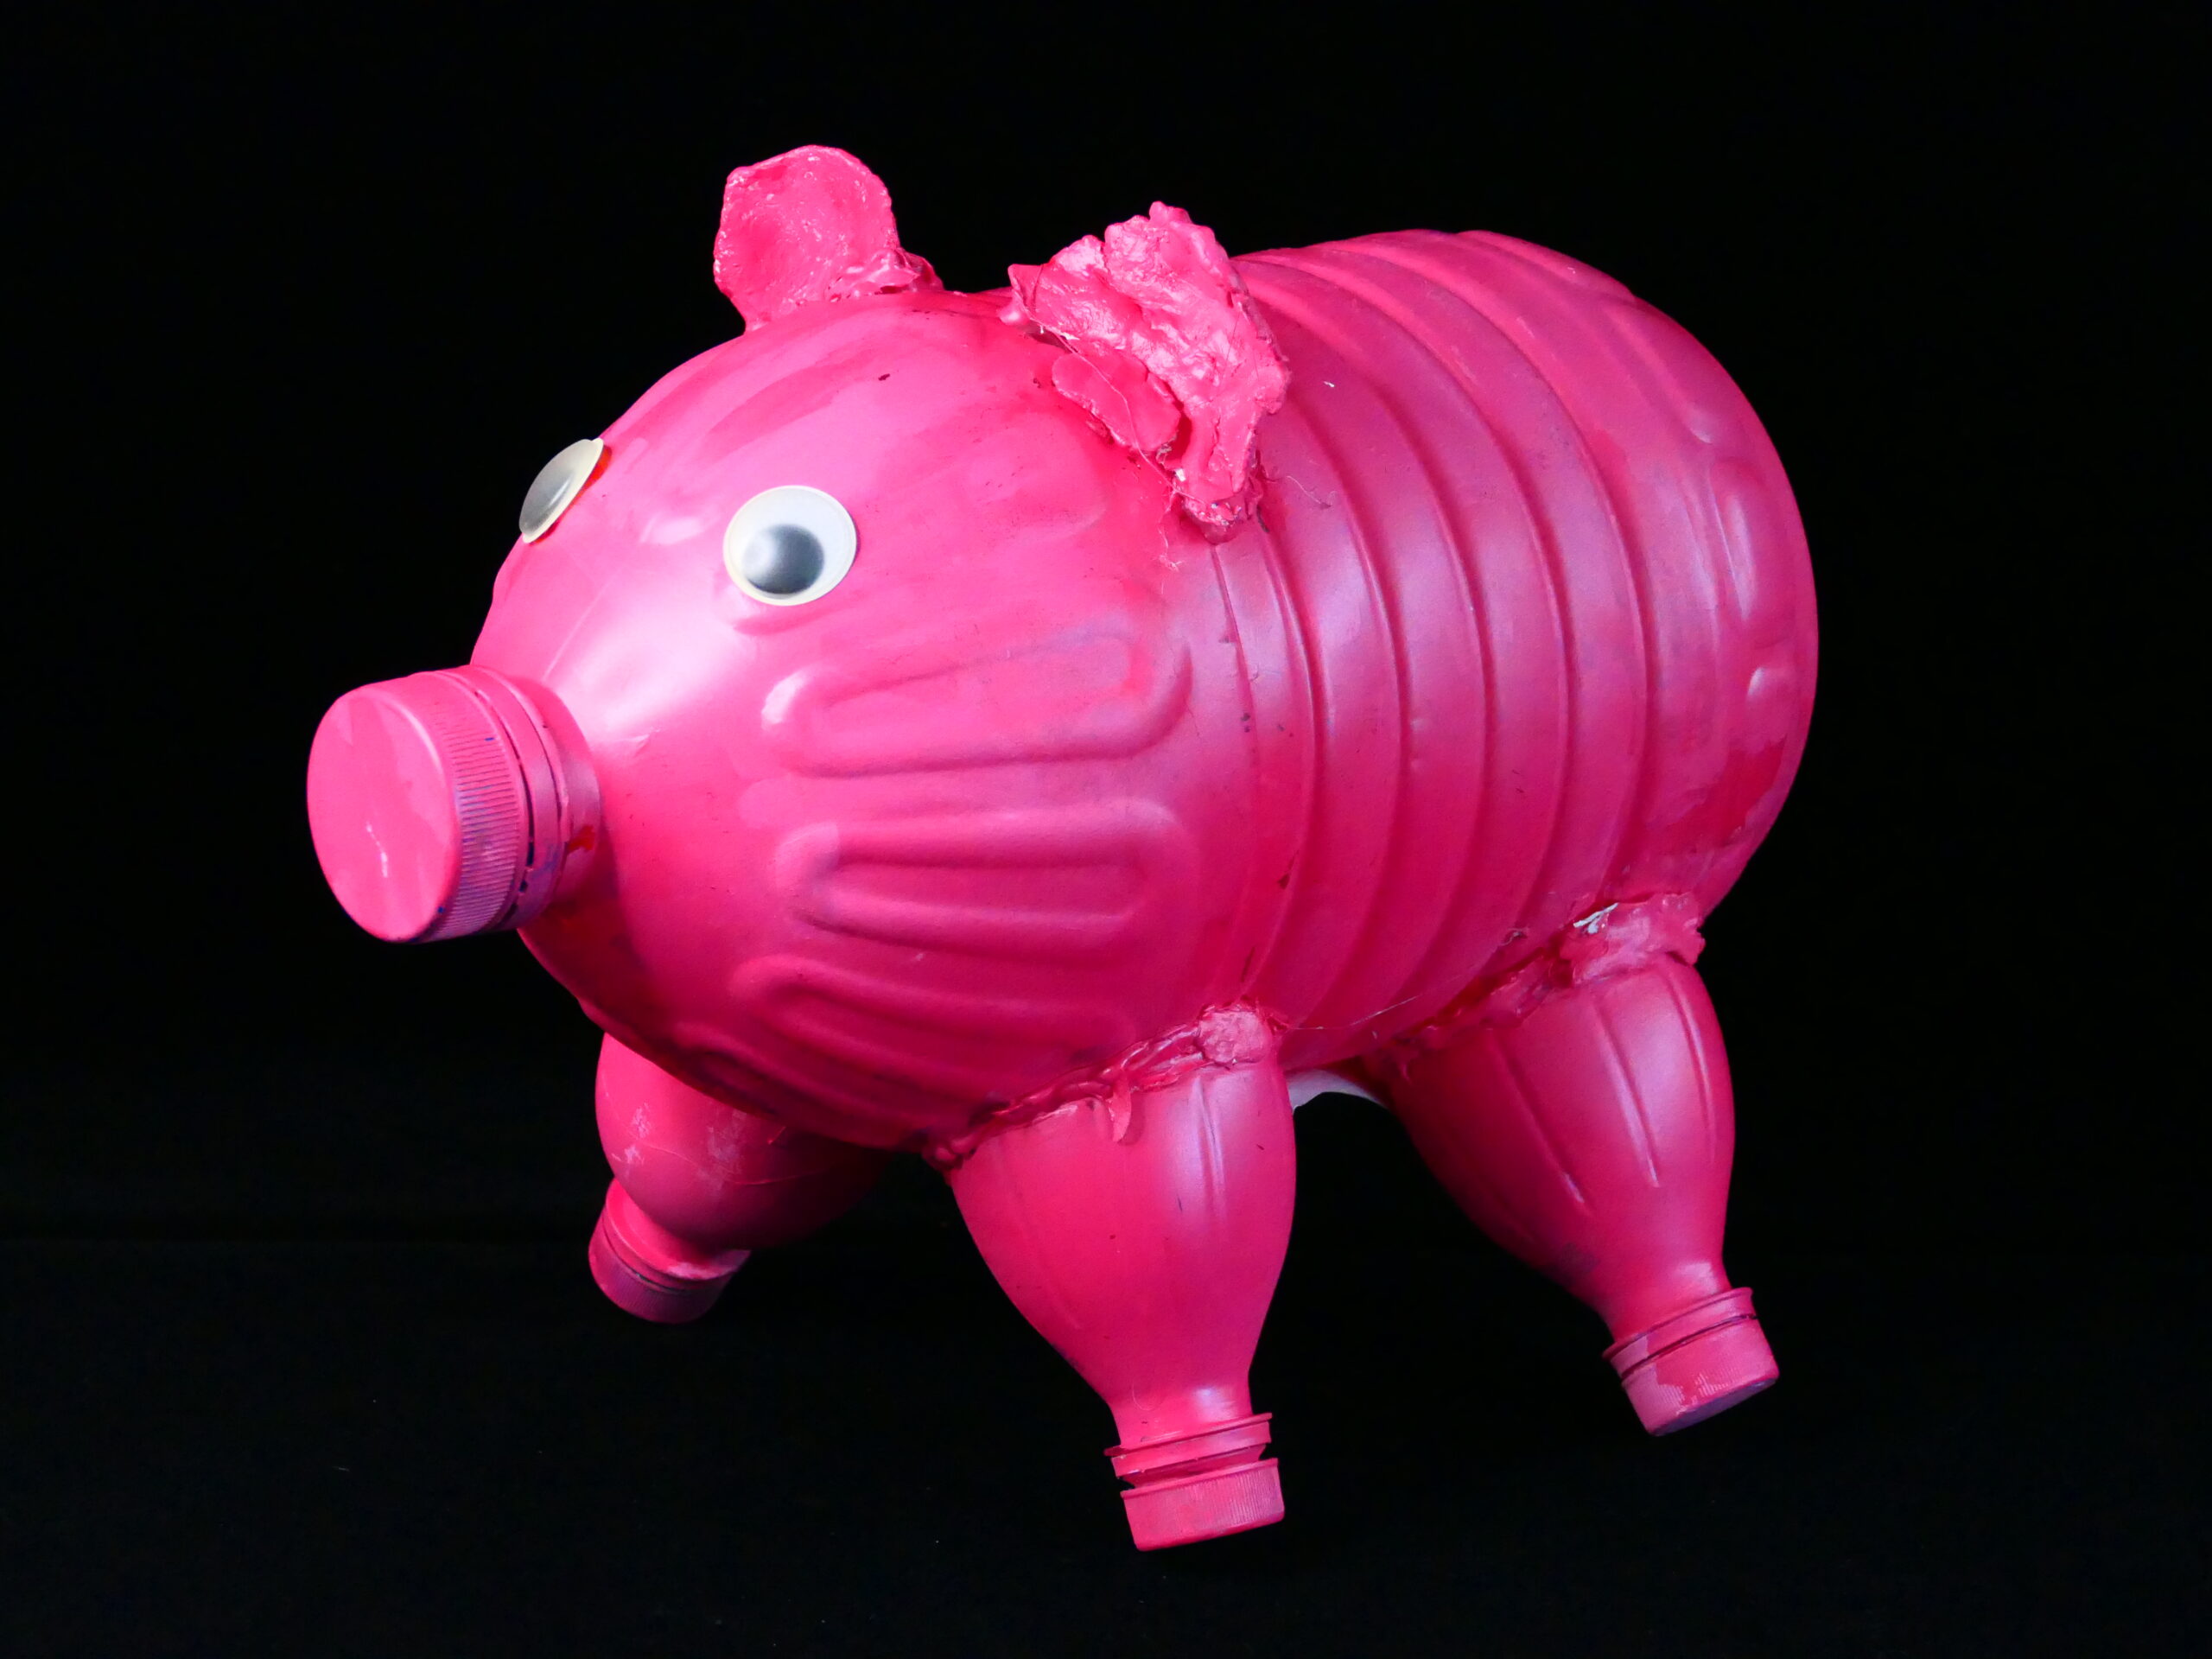 委屈的小豬-09